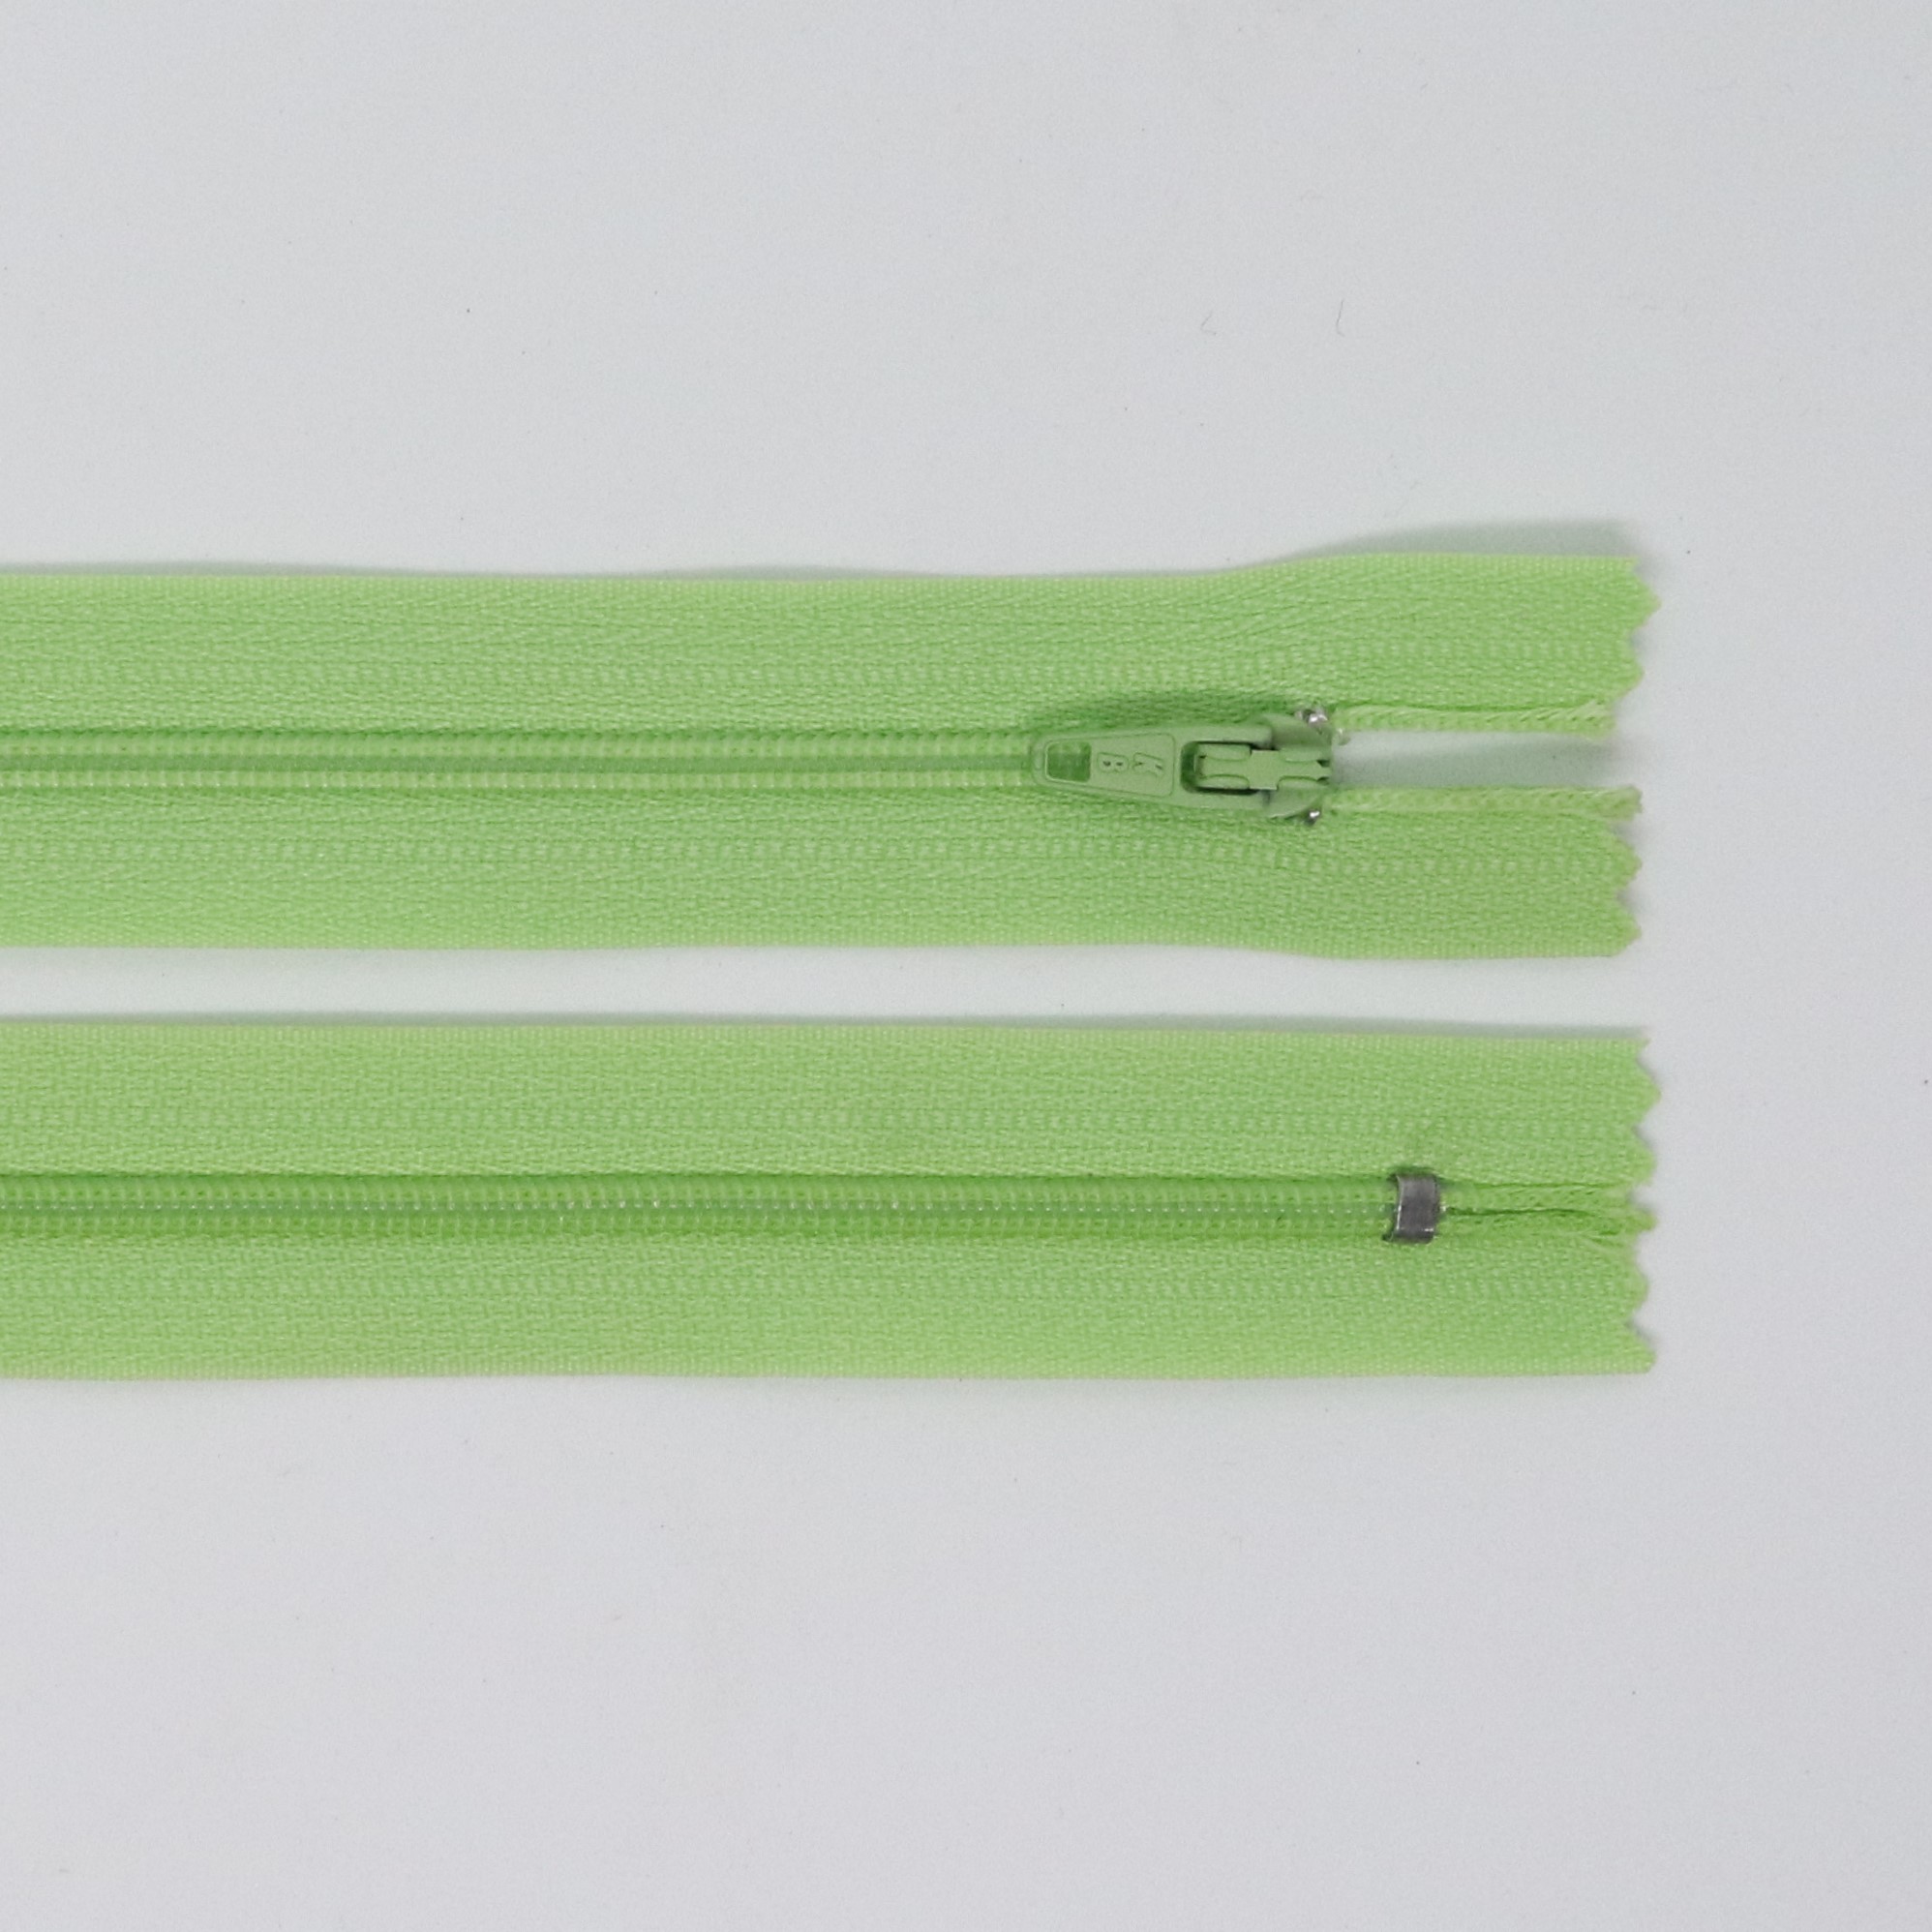 Spirálový zip, šíøe 3 mm, délka 50 cm, svìtle zelená - zvìtšit obrázek